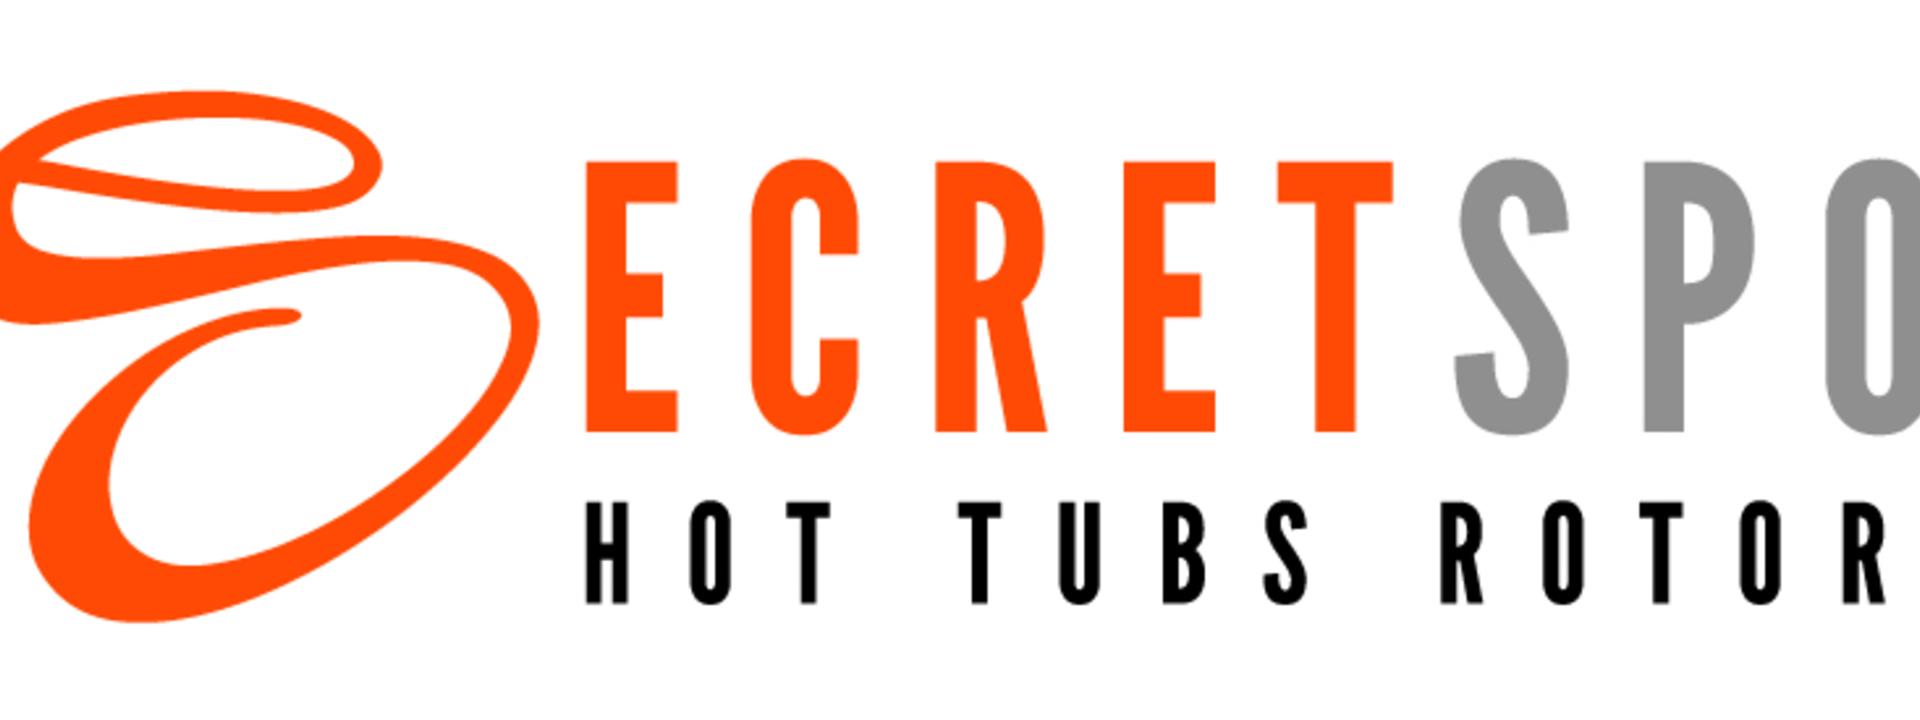 secret-spot-logo-medium.jpg